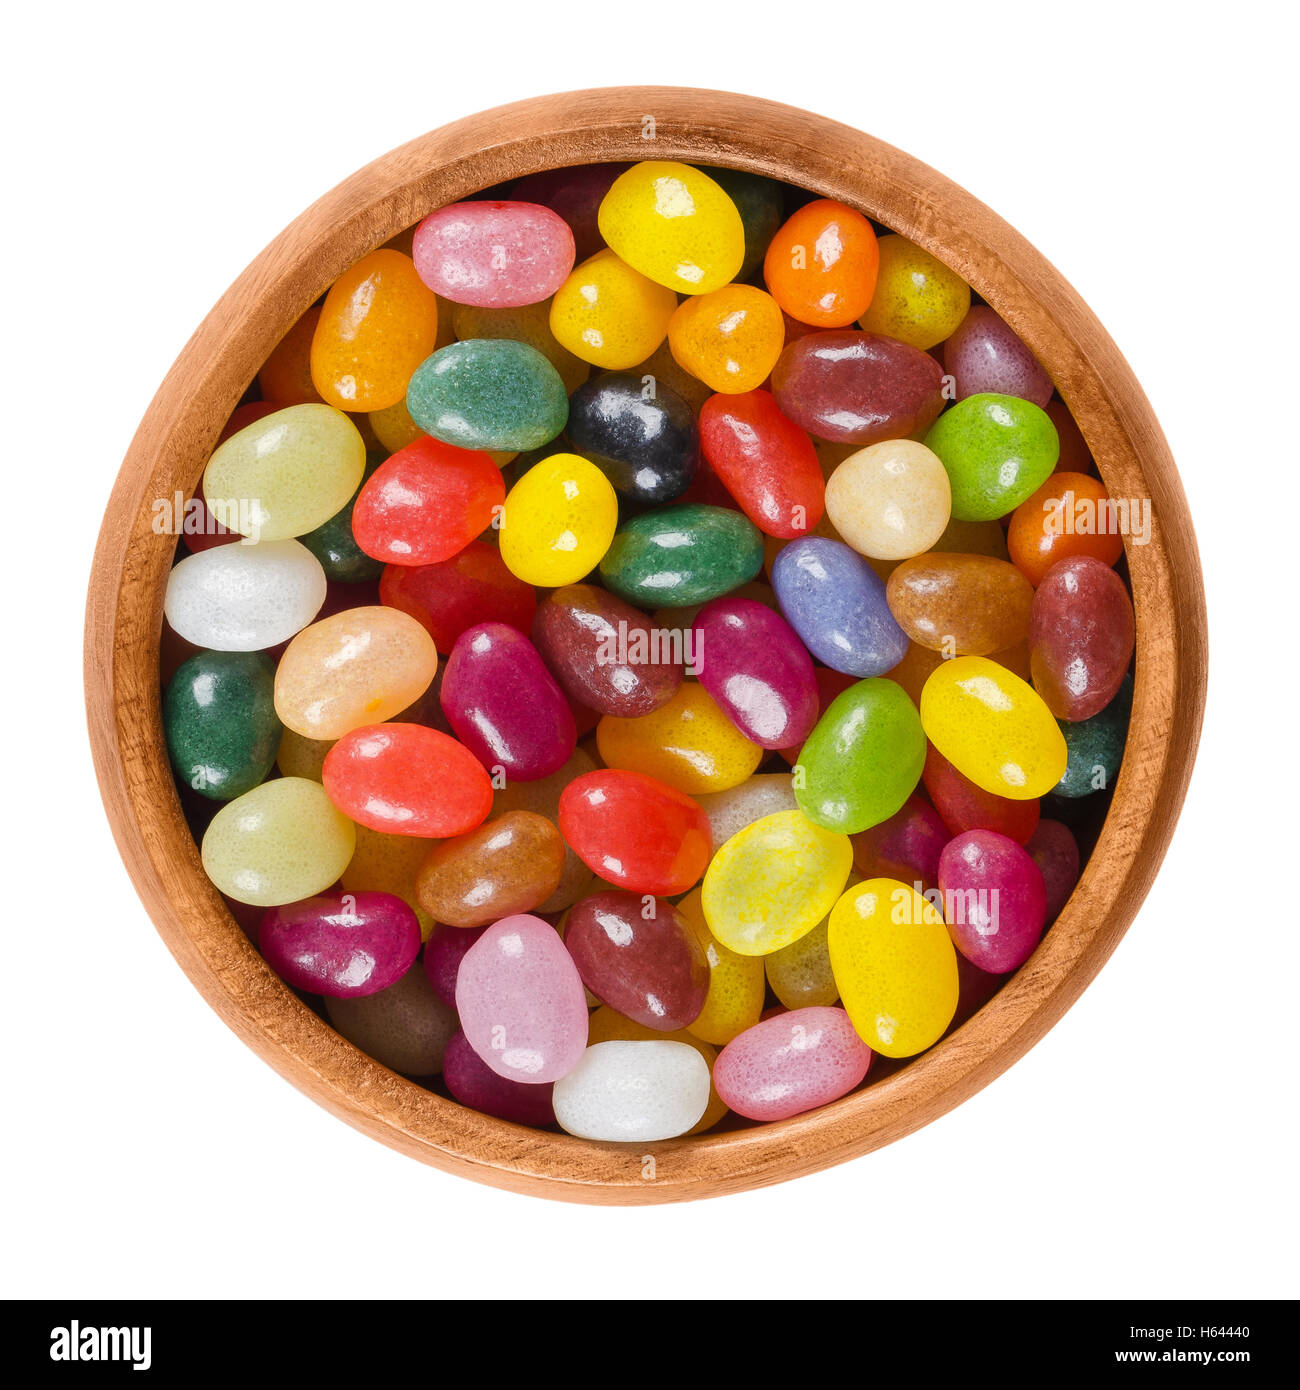 Gummibärchen in Holzschale auf weißem Hintergrund. Verschiedene kleine bohnenförmige Zucker Bonbons in verschiedenen Farben mit weichen Bonbons. Stockfoto